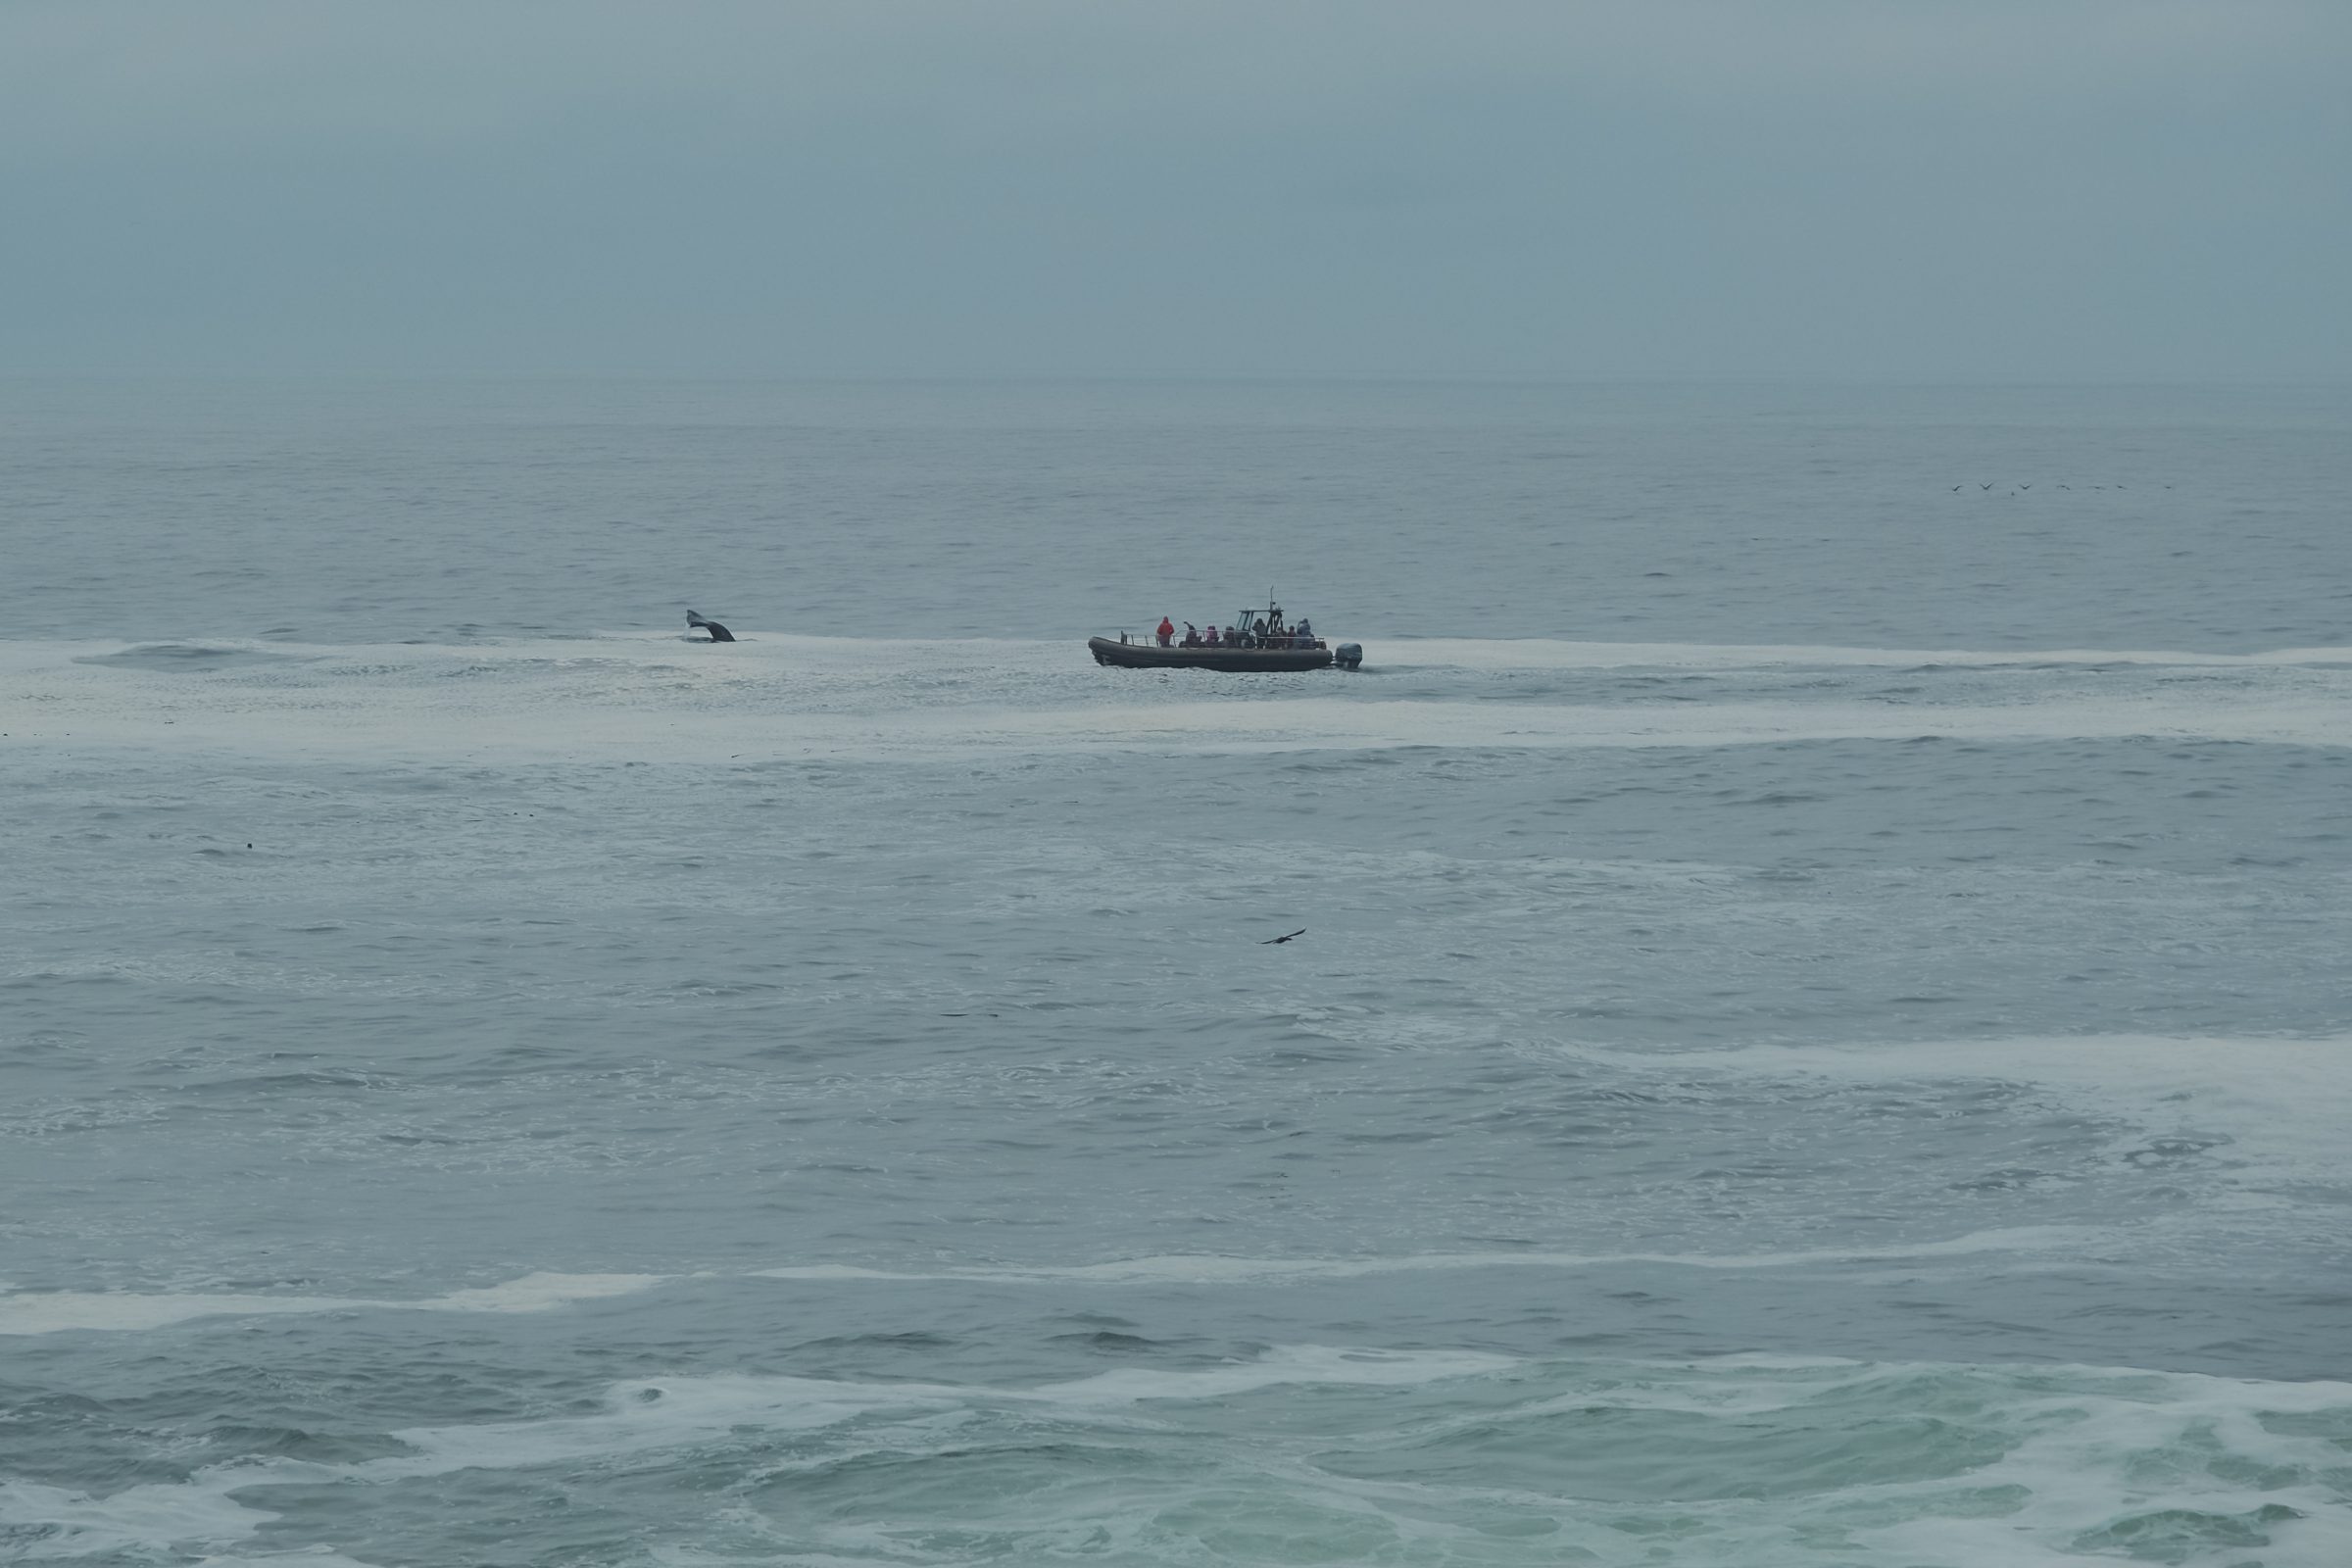 Le long de la côte ouest de l'Amérique, j'ai vu de nombreux bateaux d'excursions d'observation des baleines